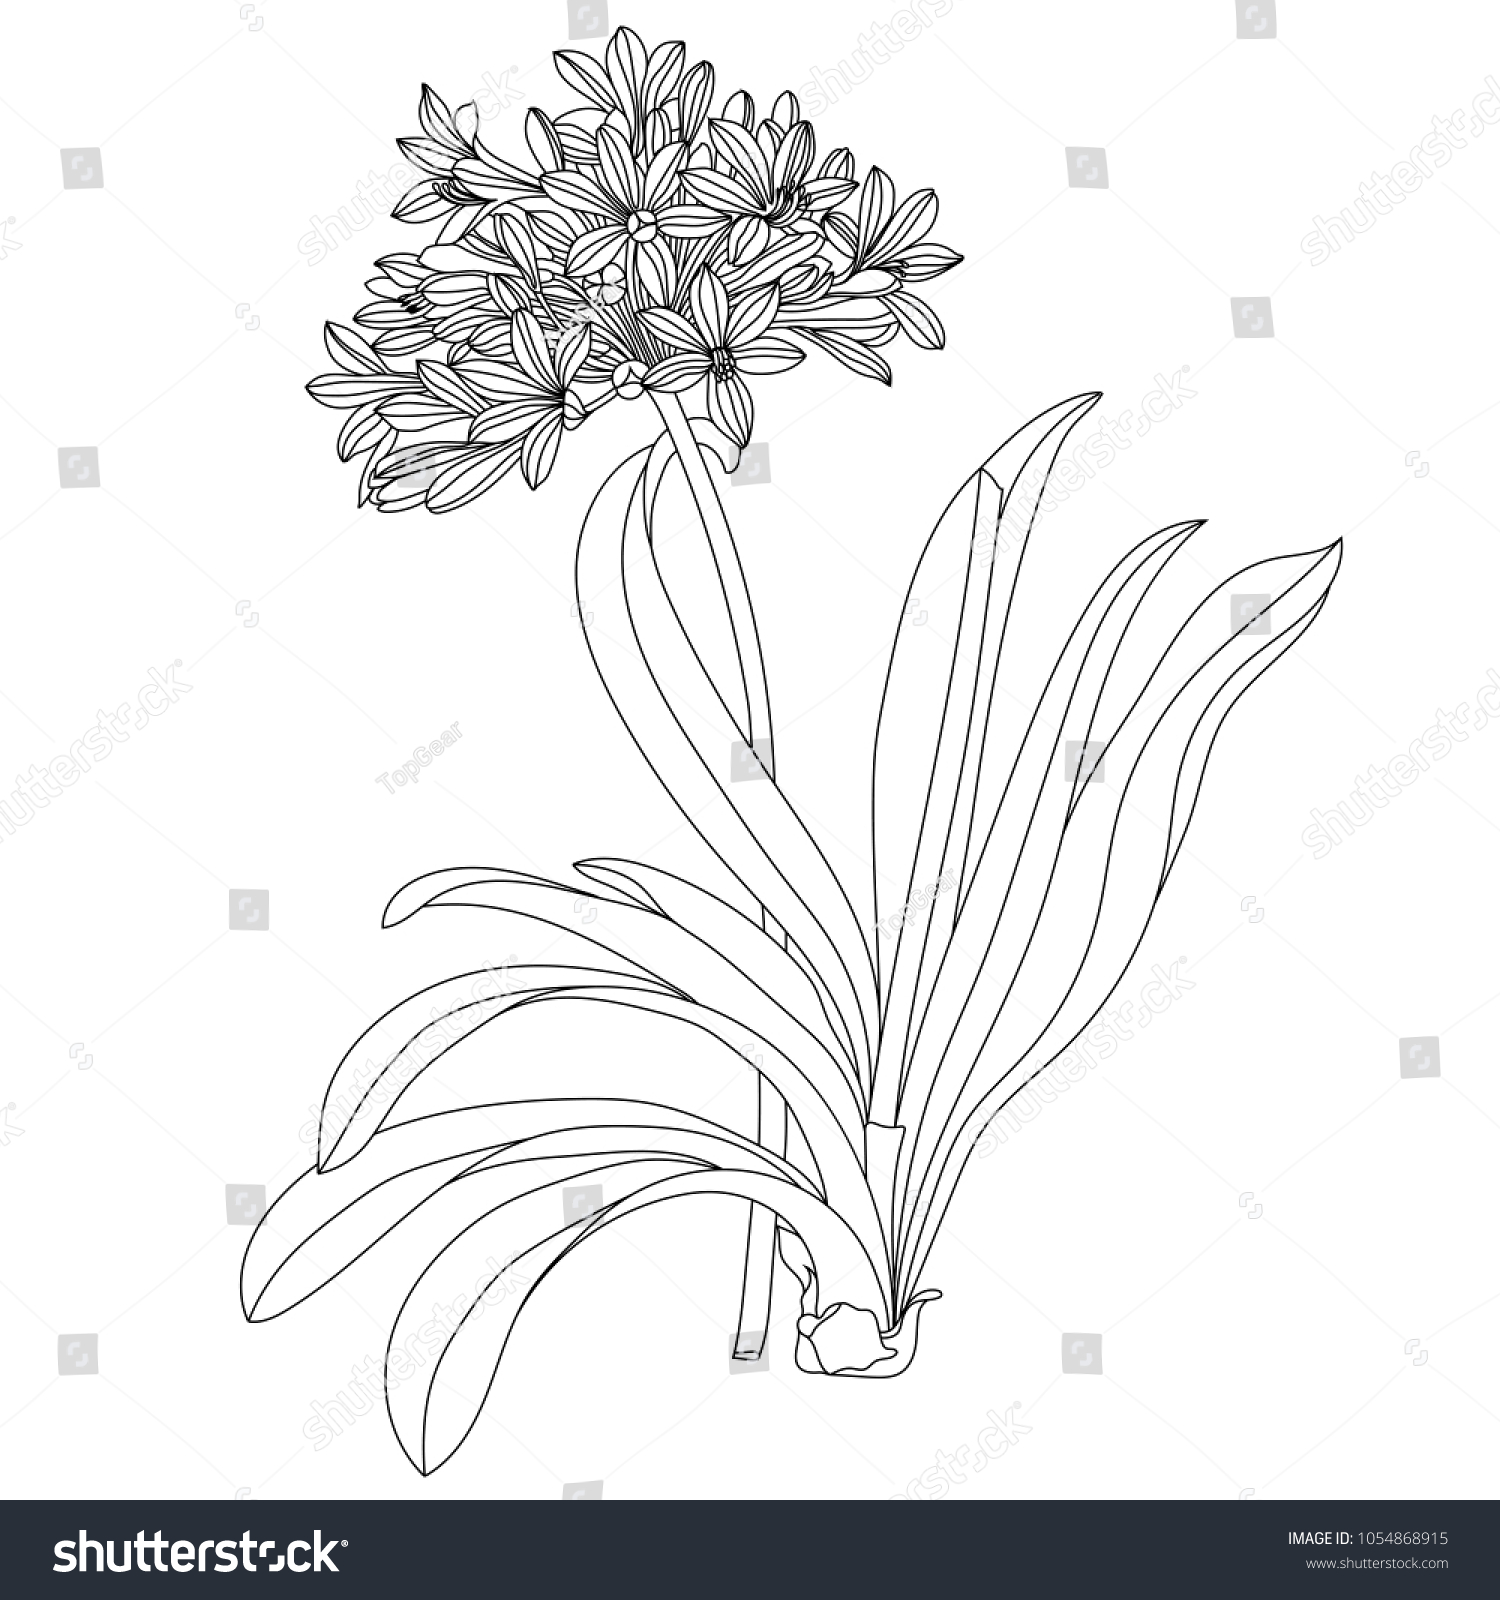 Allium Flower Black White Vector Stock Vector Royalty Free 1054868915